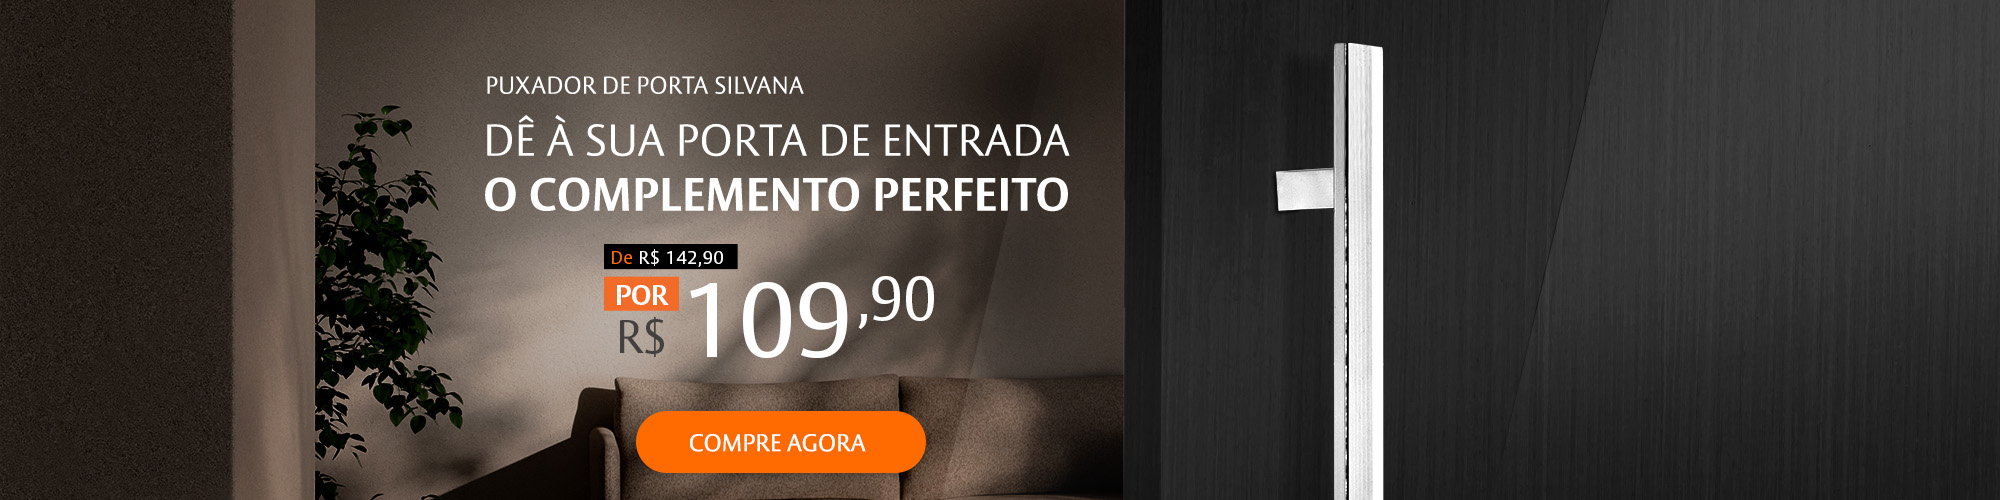 Puxador_Premium_Silvana_Reto